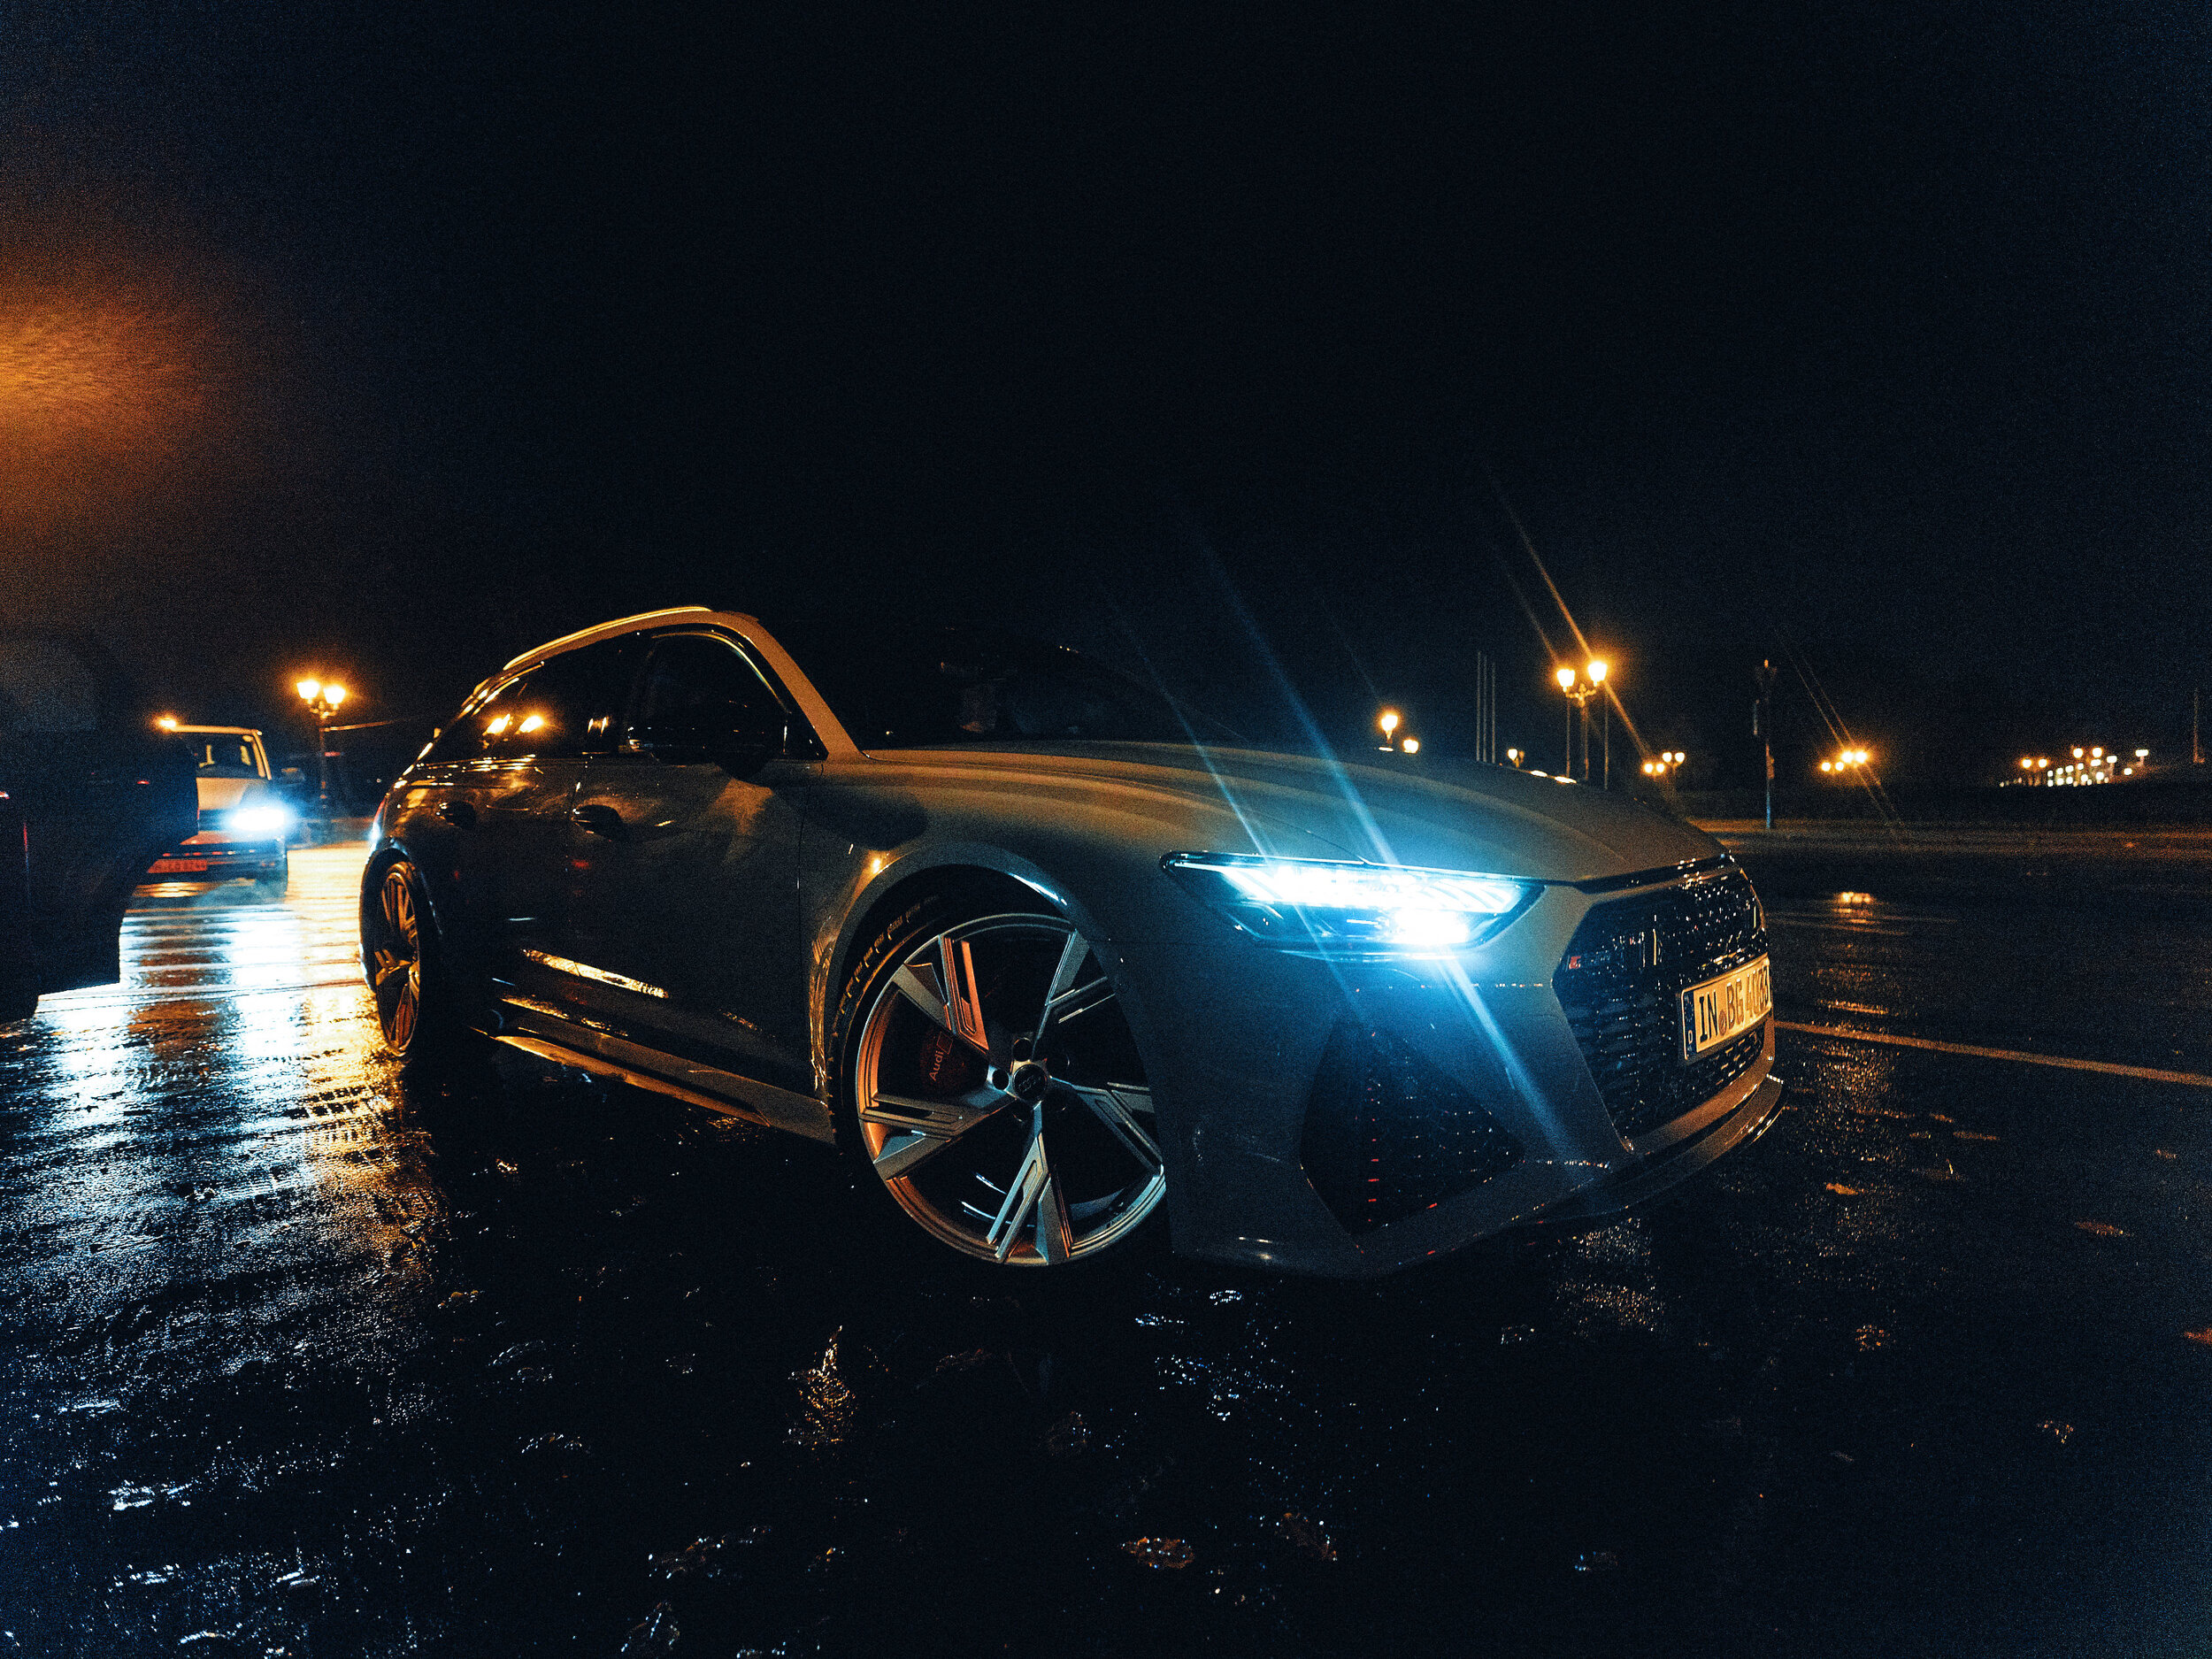 GFX_BWGTBLD-HS_Audi-Car_301.jpg